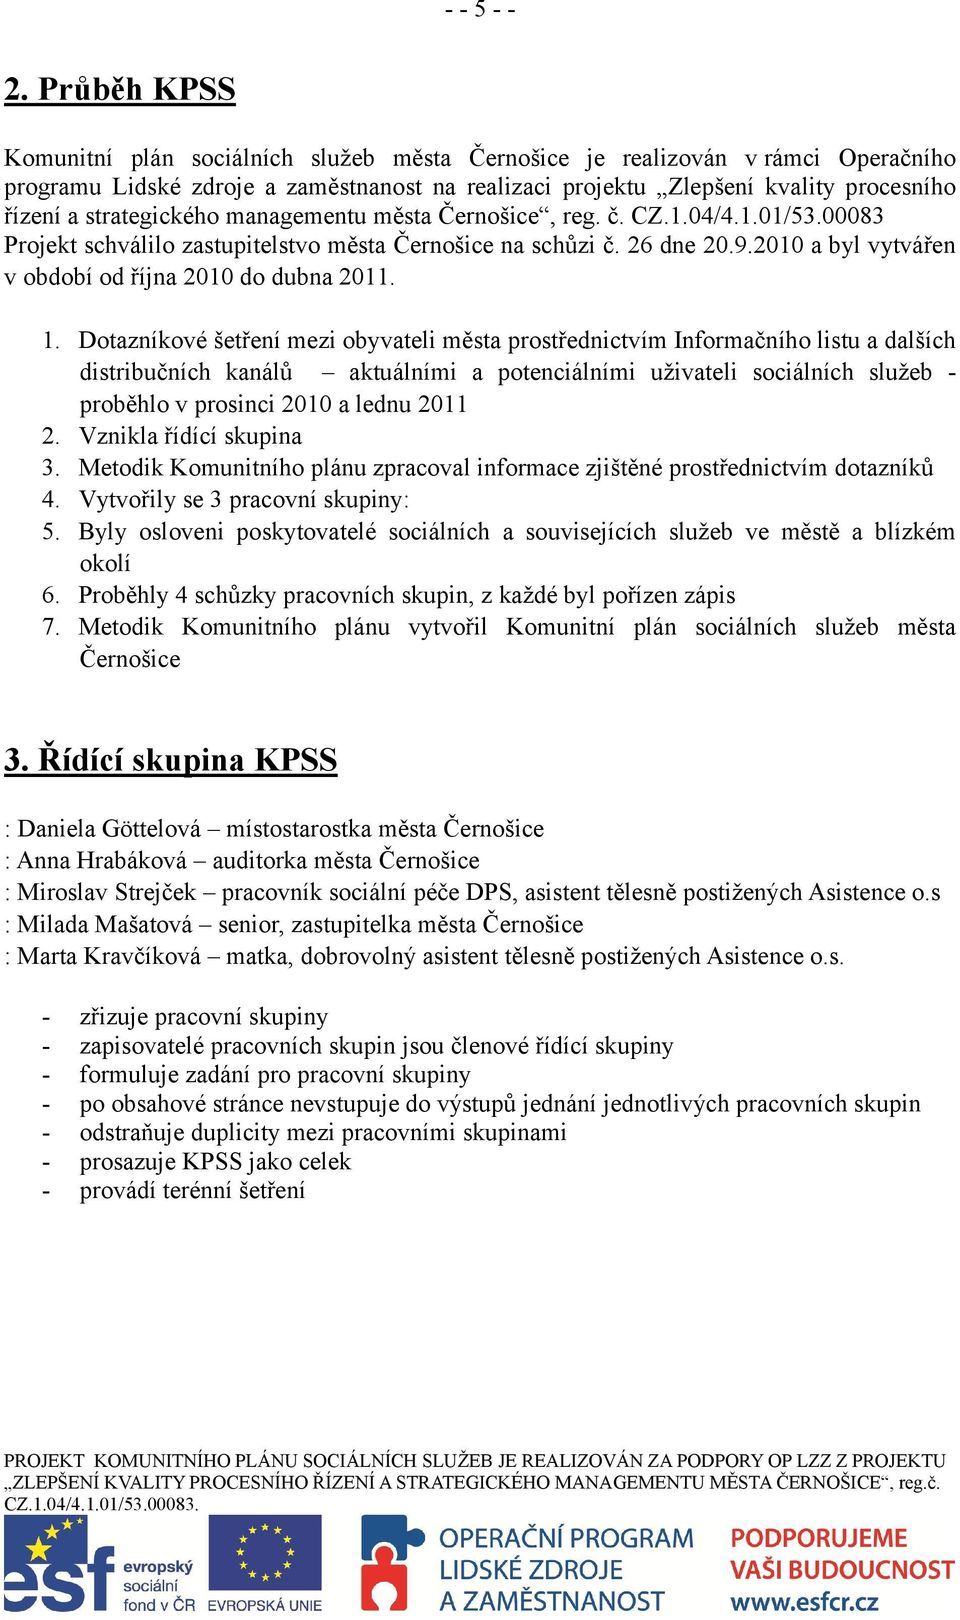 strategického managementu města Černošice, reg. č. CZ.1.04/4.1.01/53.00083 Projekt schválilo zastupitelstvo města Černošice na schůzi č. 26 dne 20.9.